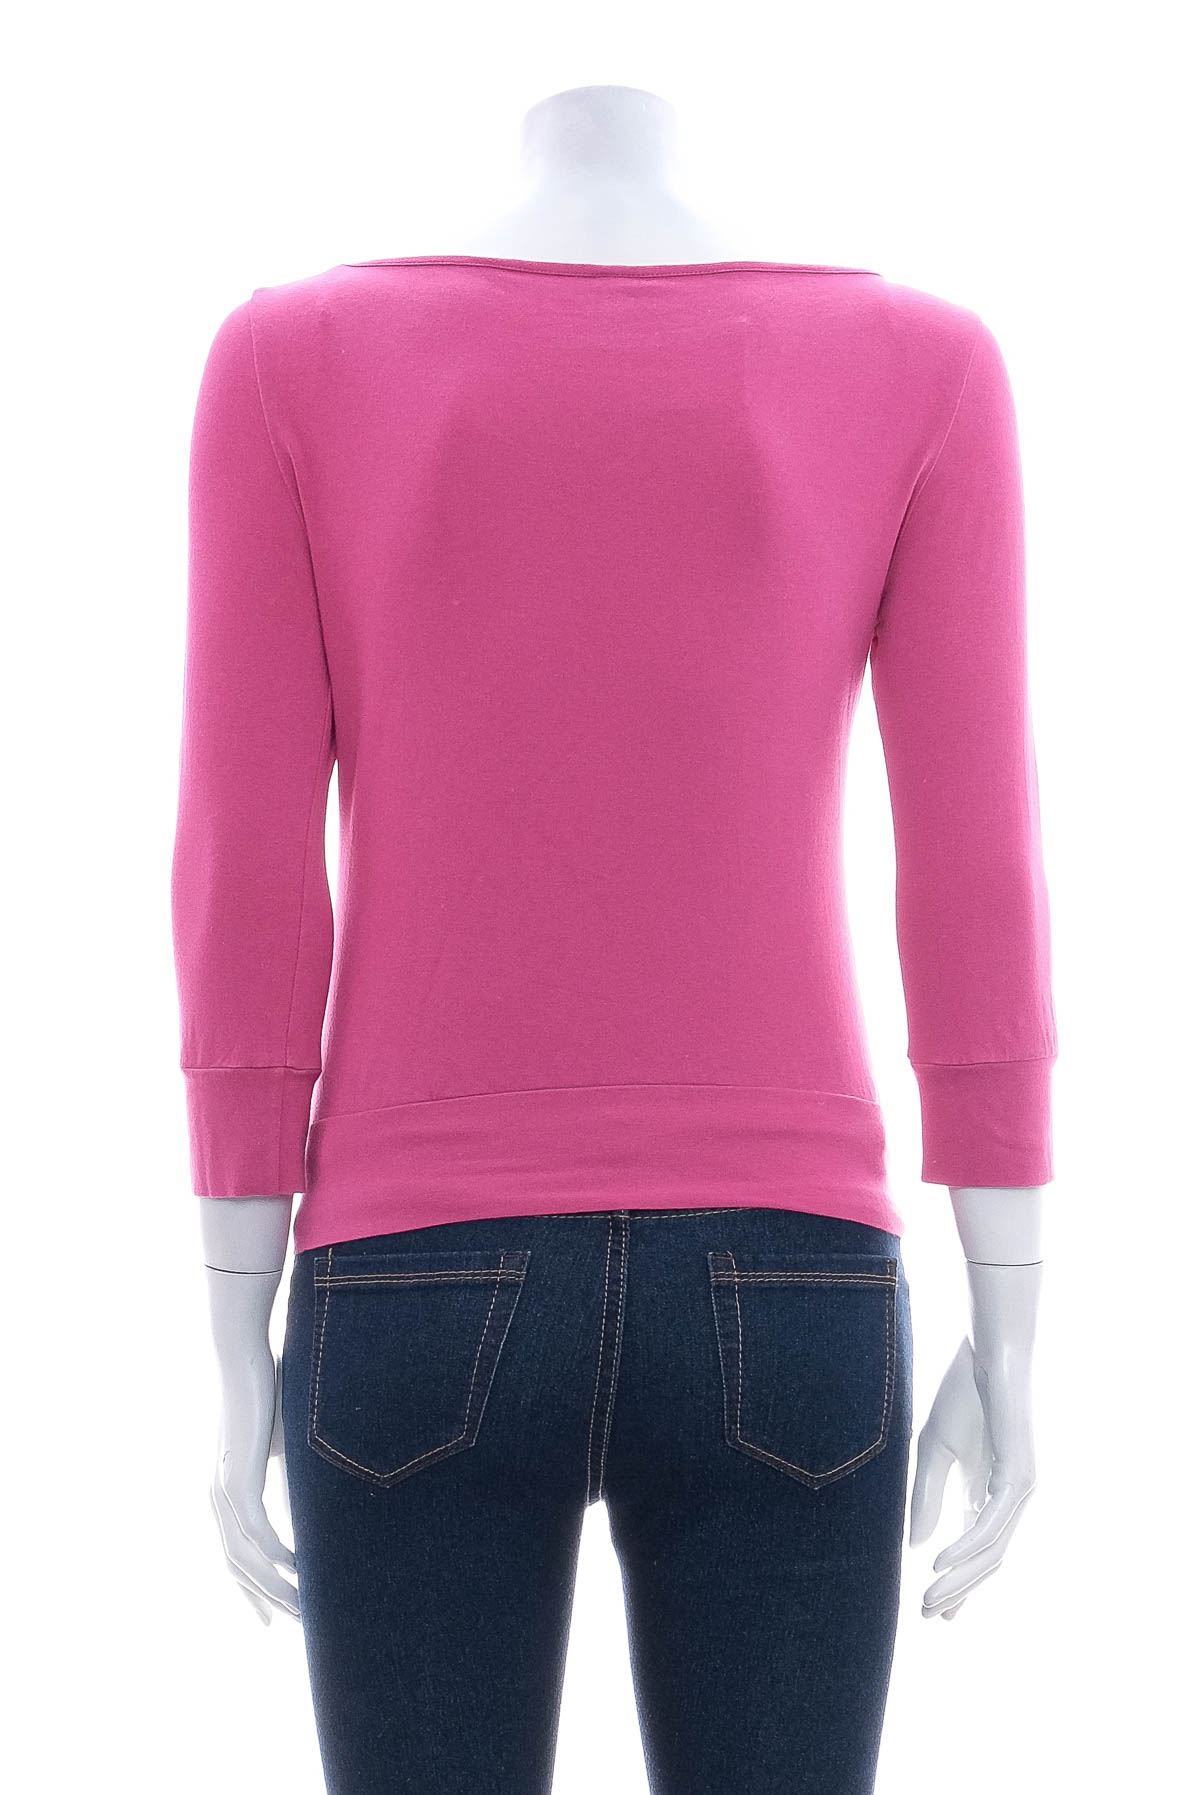 Μπλούζα για κορίτσι - Calvin Klein Jeans - 1